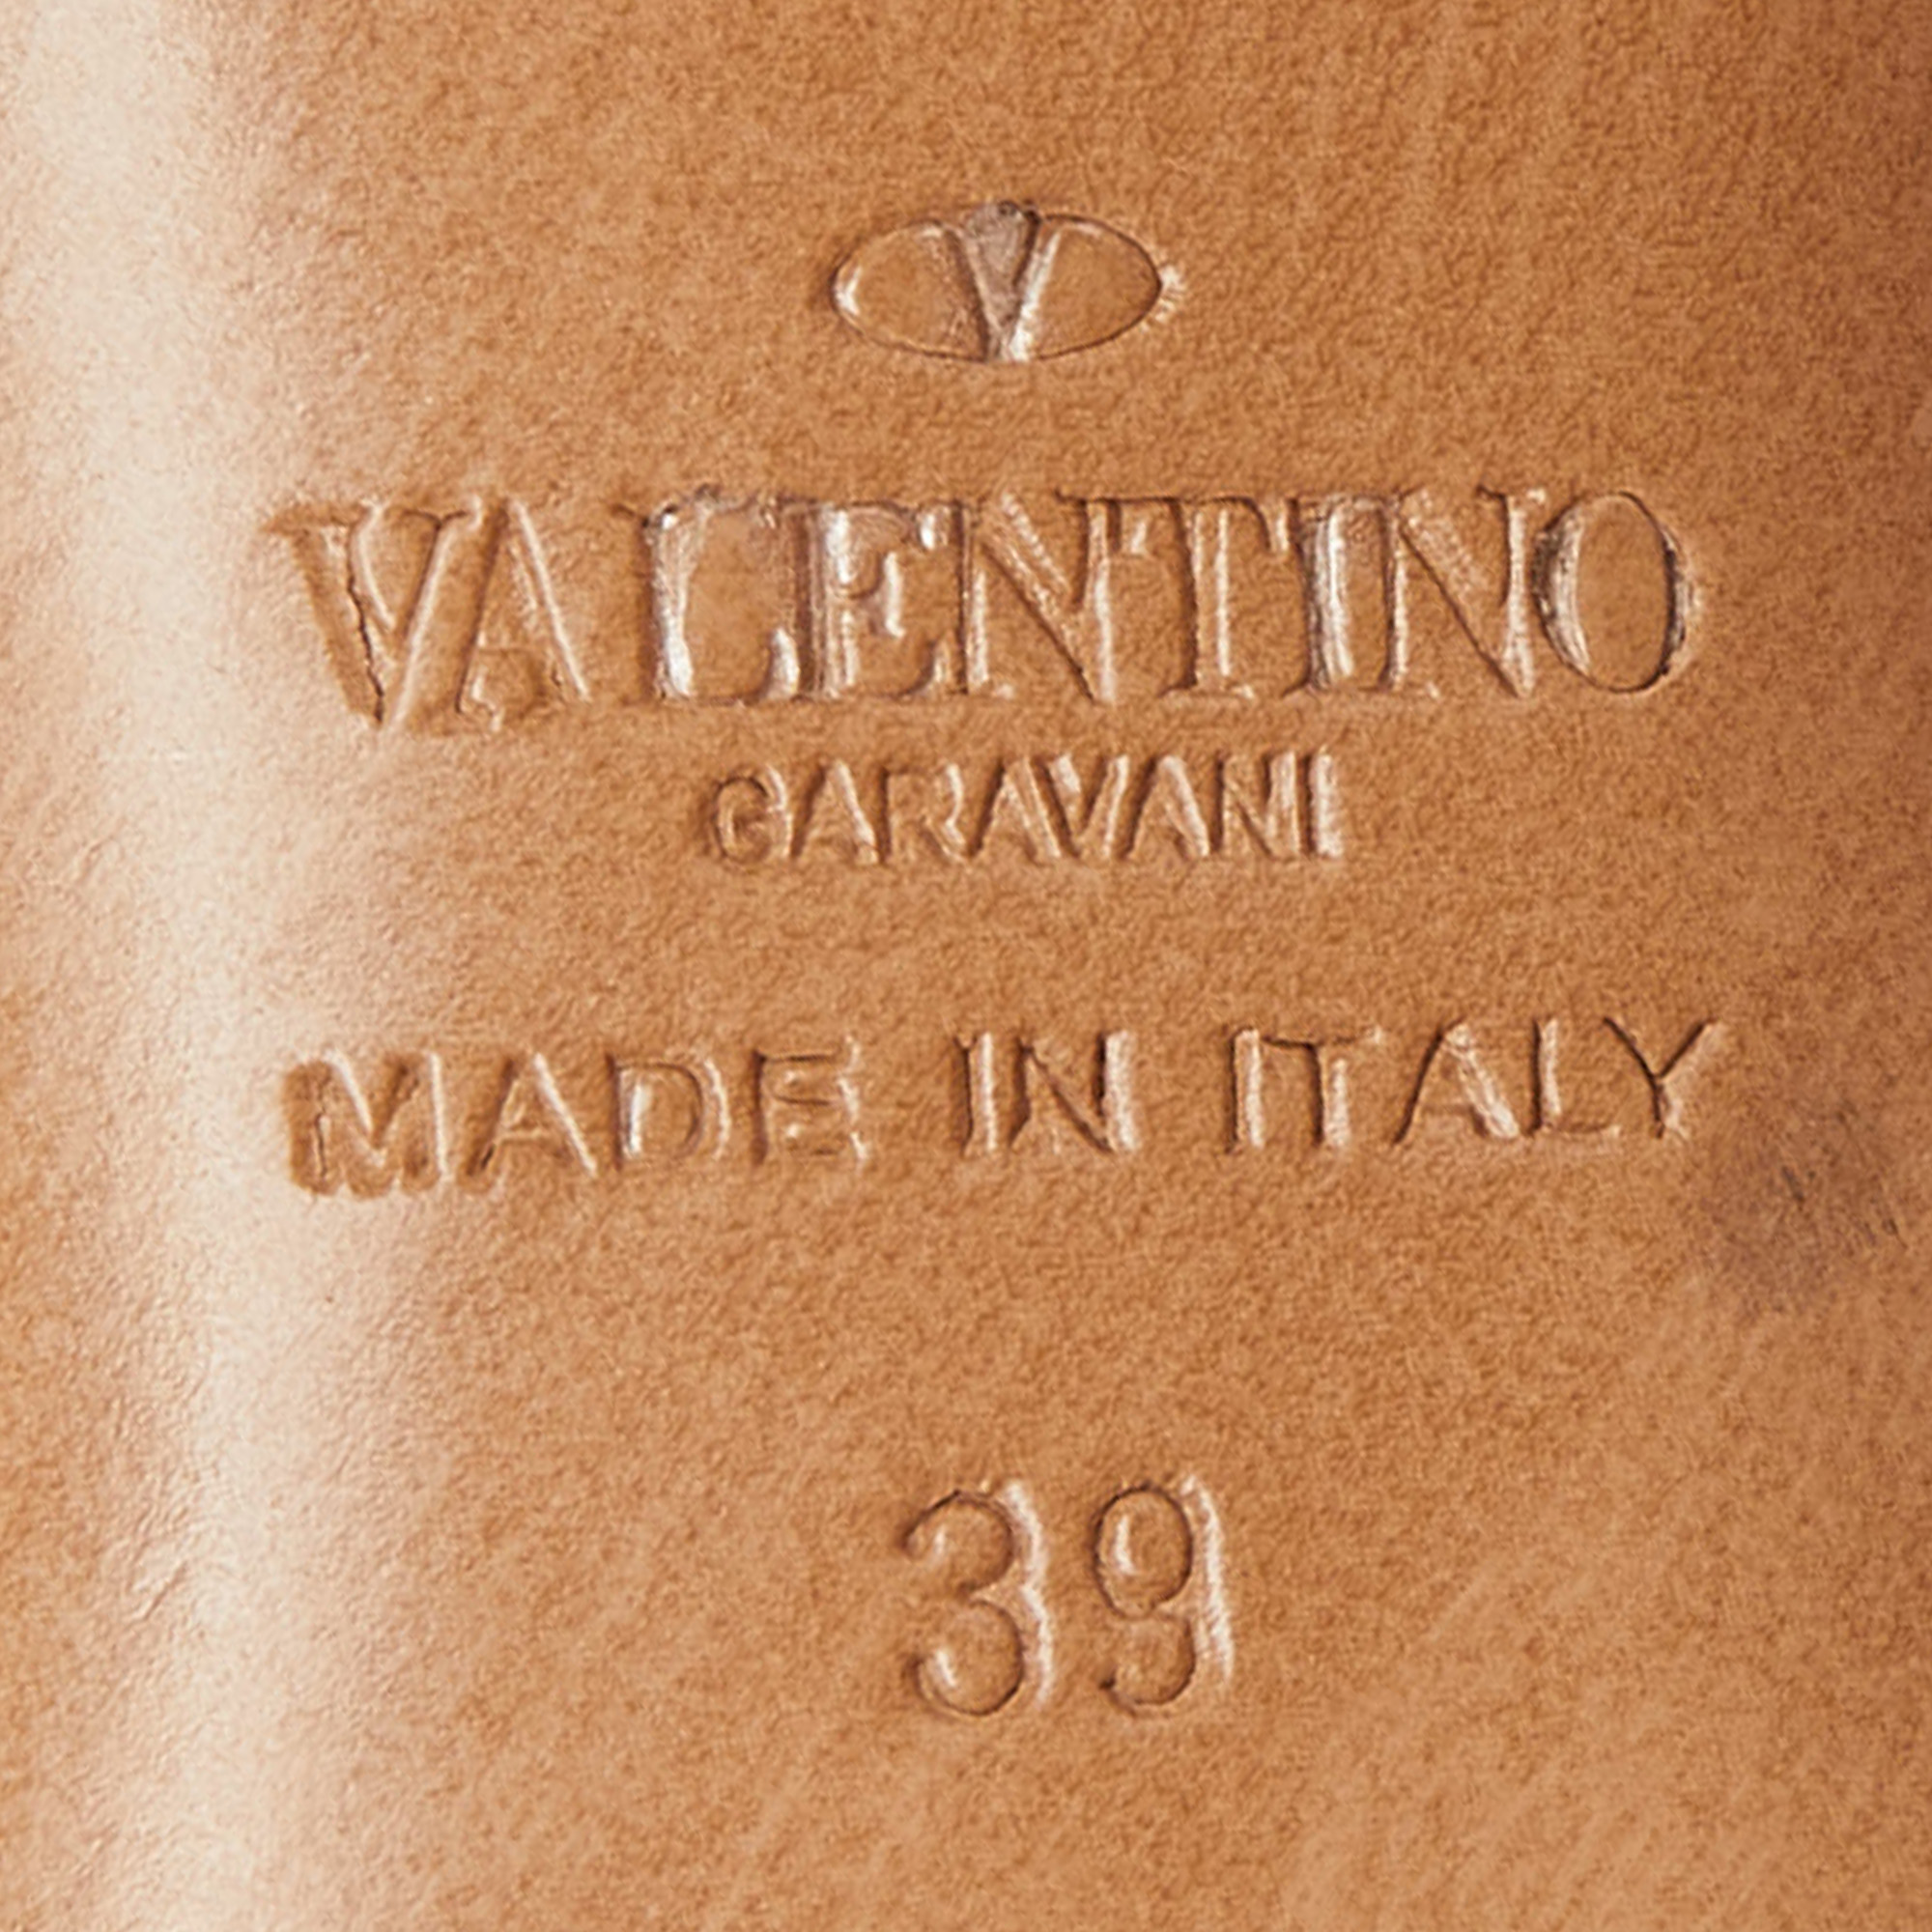 Valentino Black Suede Crystal Embellished Ankle Strap Sandals Size 39